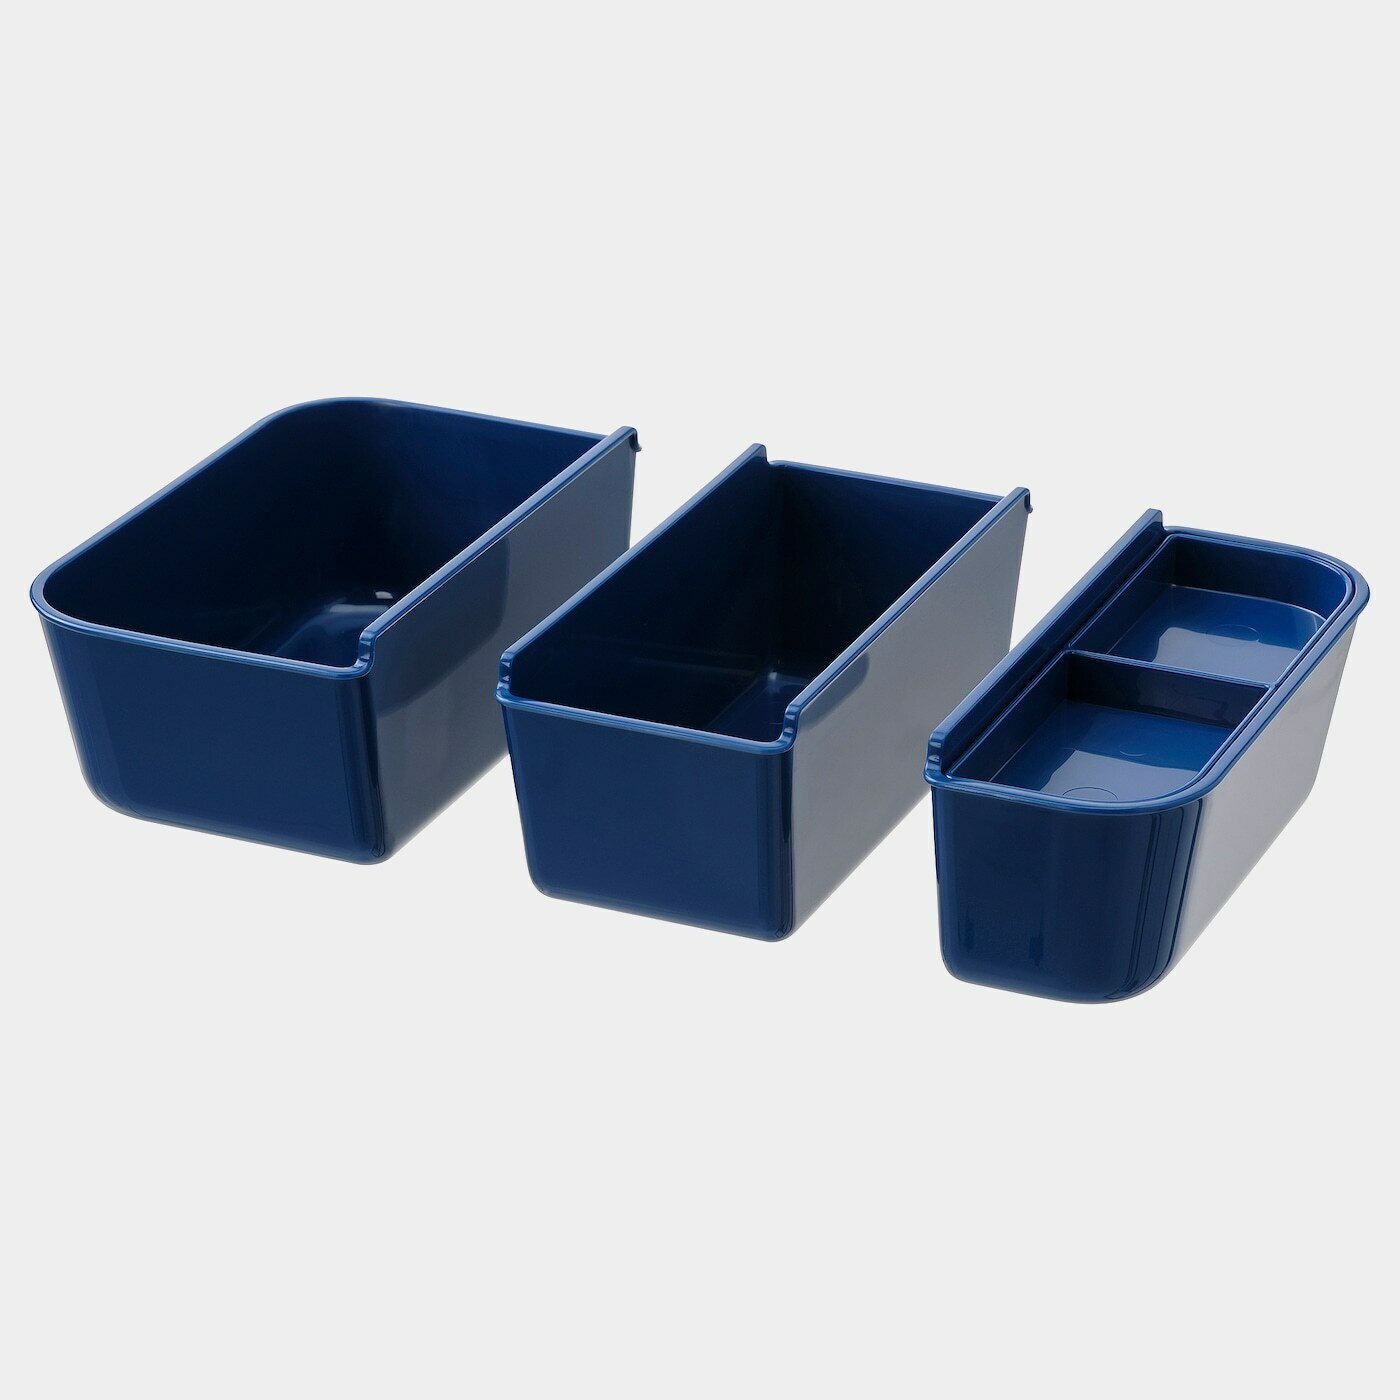 IKEA 365+ Lunchbox-Einsatz 3 St.  -  - Möbel Ideen für dein Zuhause von Home Trends. Möbel Trends von Social Media Influencer für dein Skandi Zuhause.